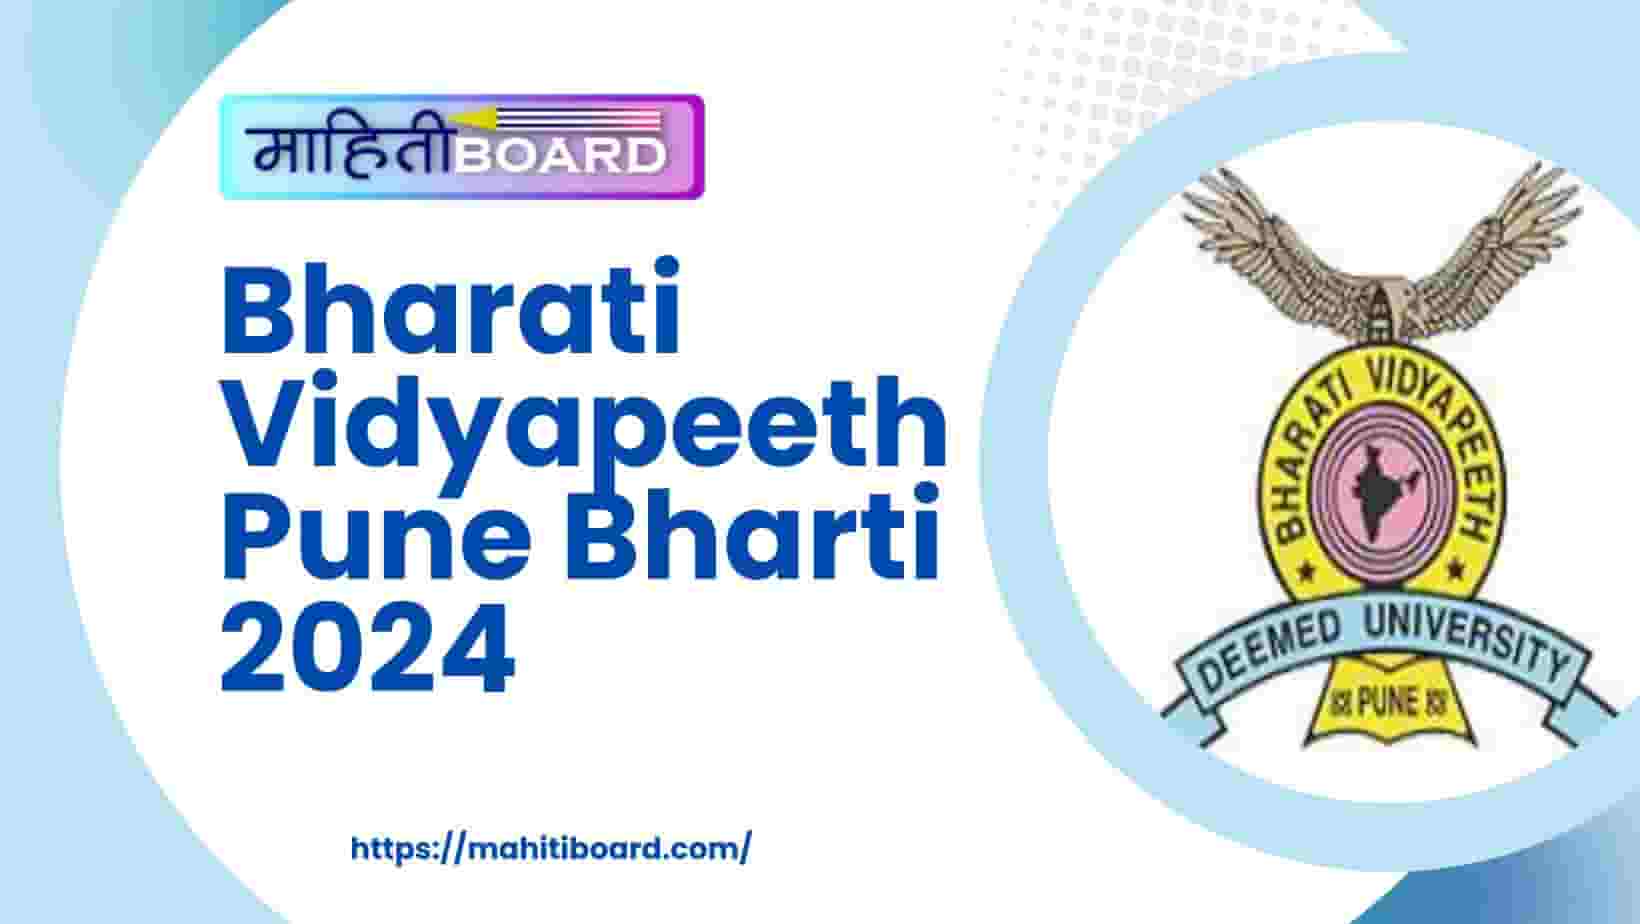 Bharati Vidyapeeth Pune Bharti 2024